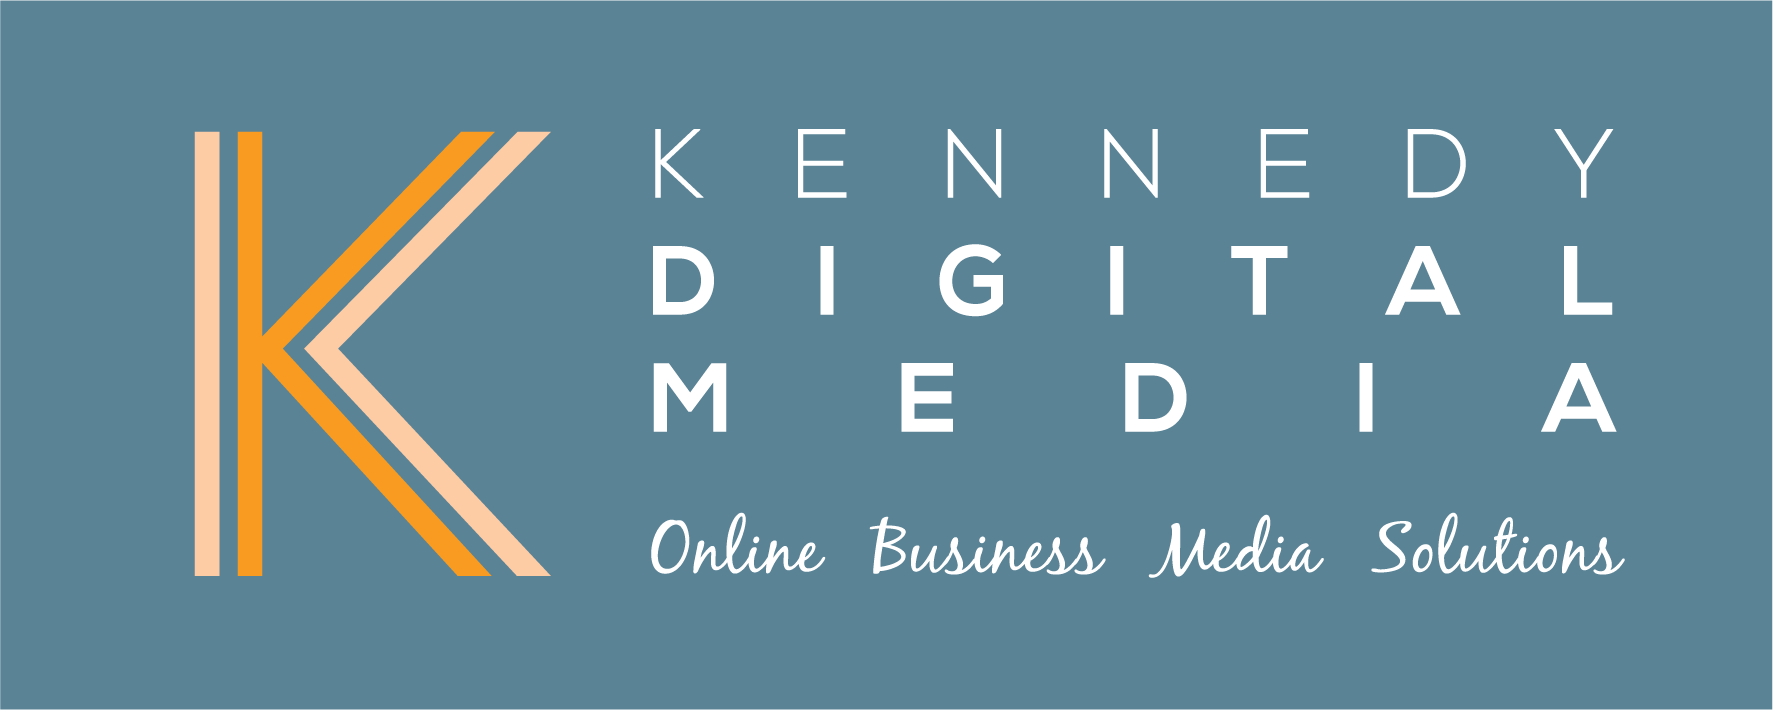 Kennedy Digital Media